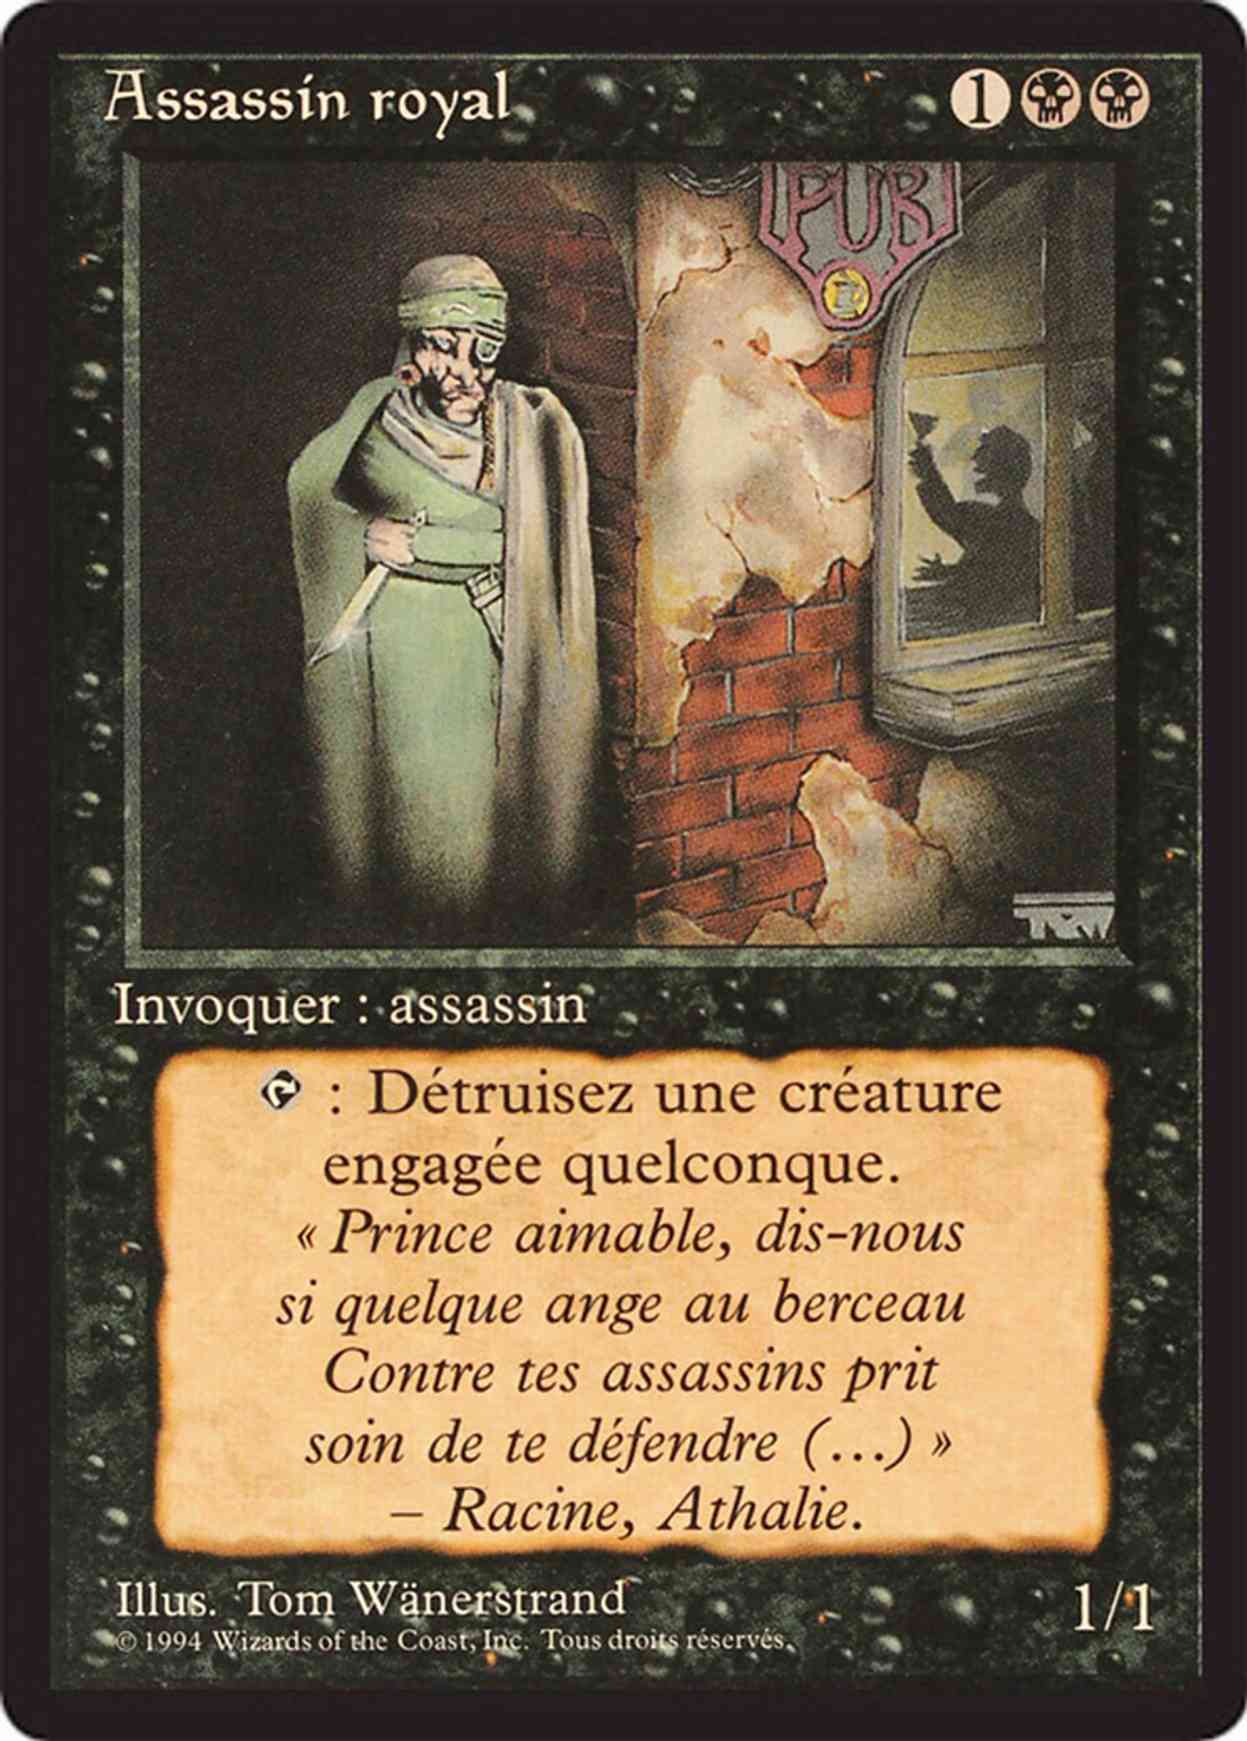 Royal Assassin magic card front